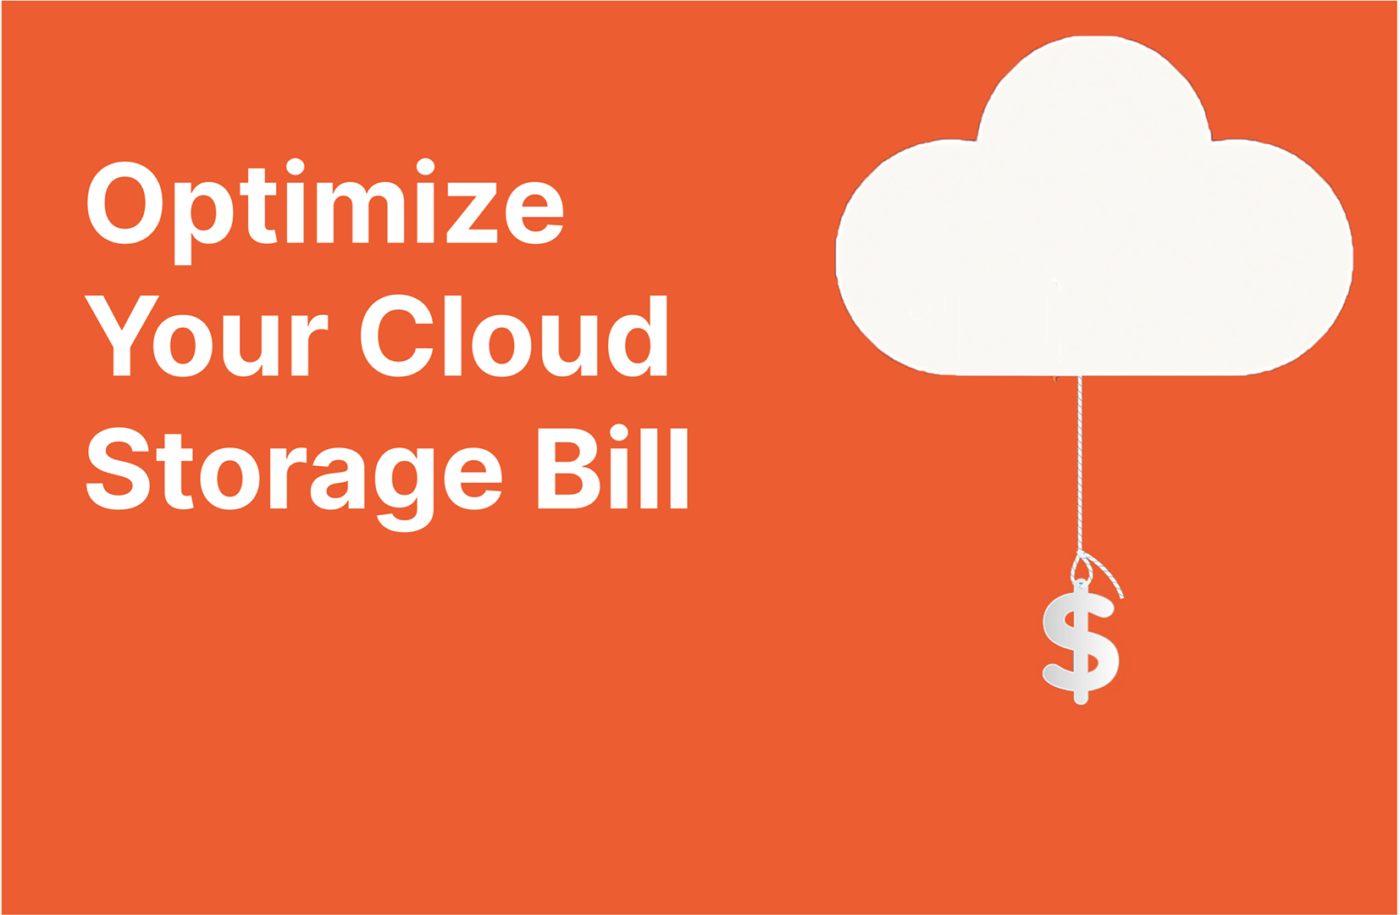 Cloud Storage Bill